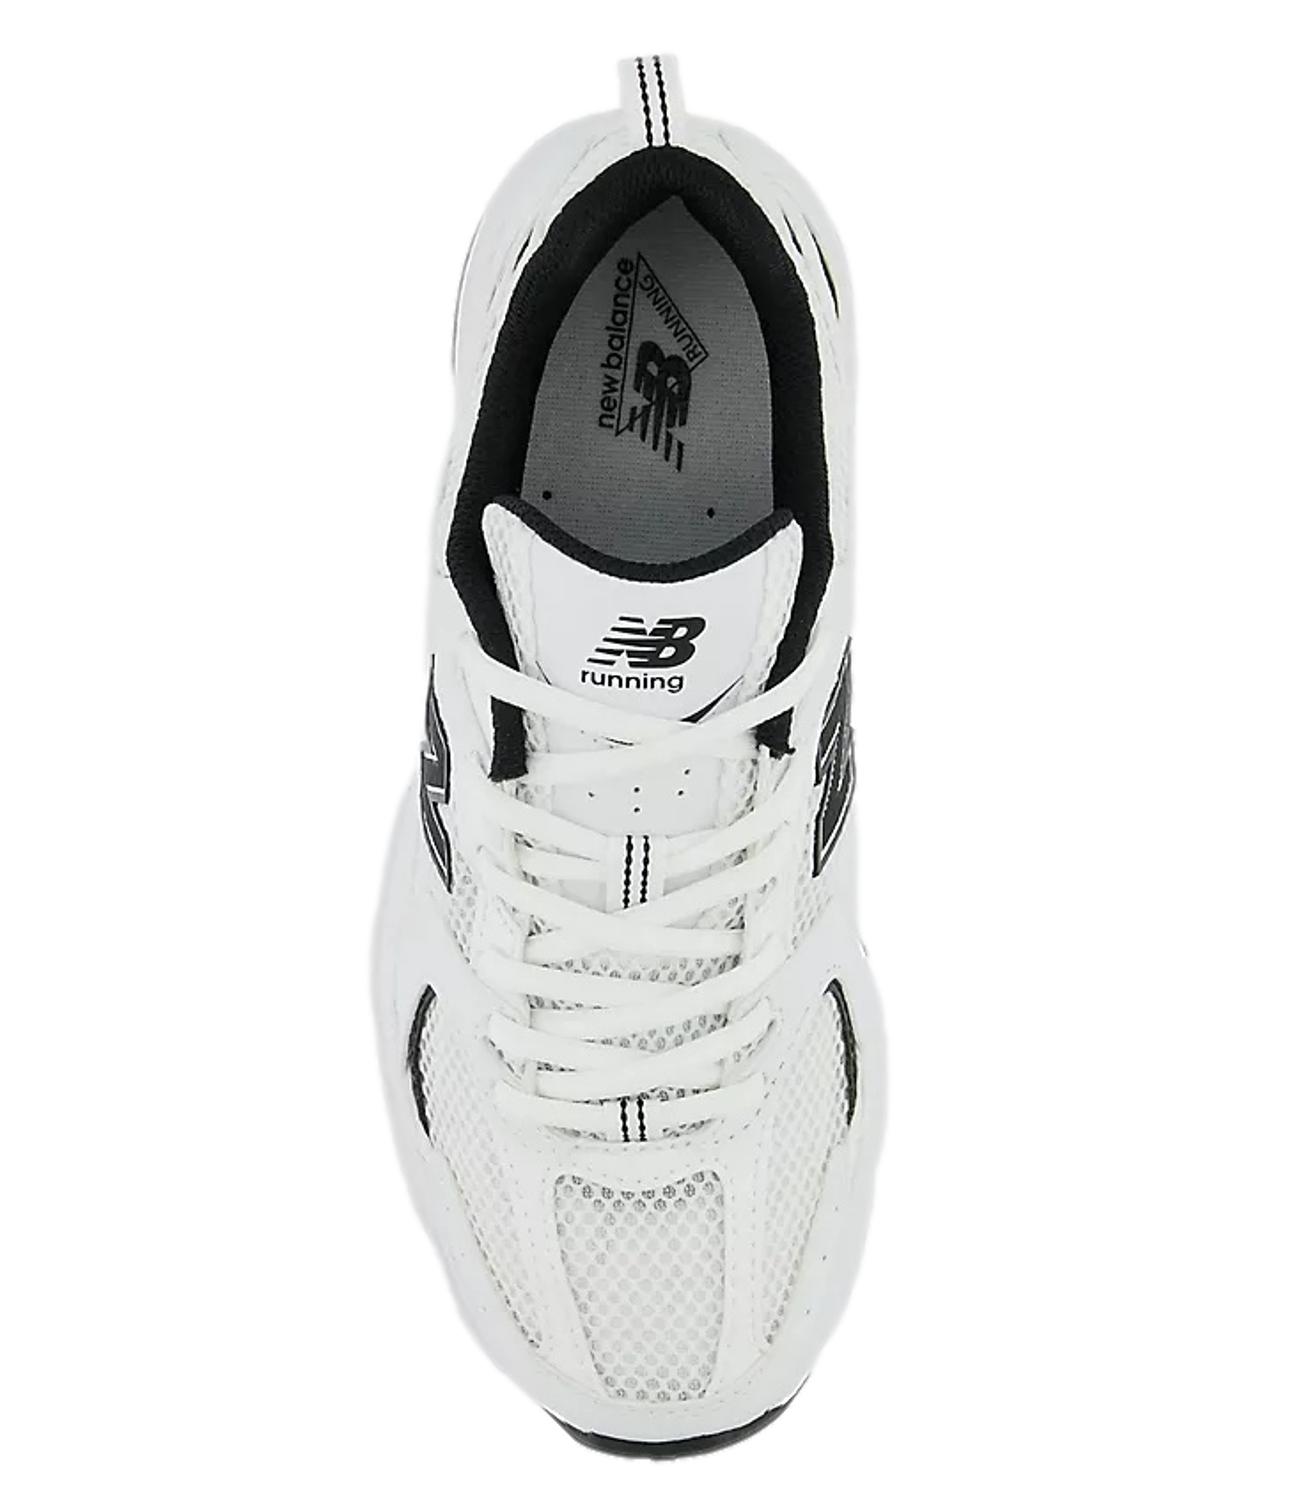 New Balance 530 bianca e nera